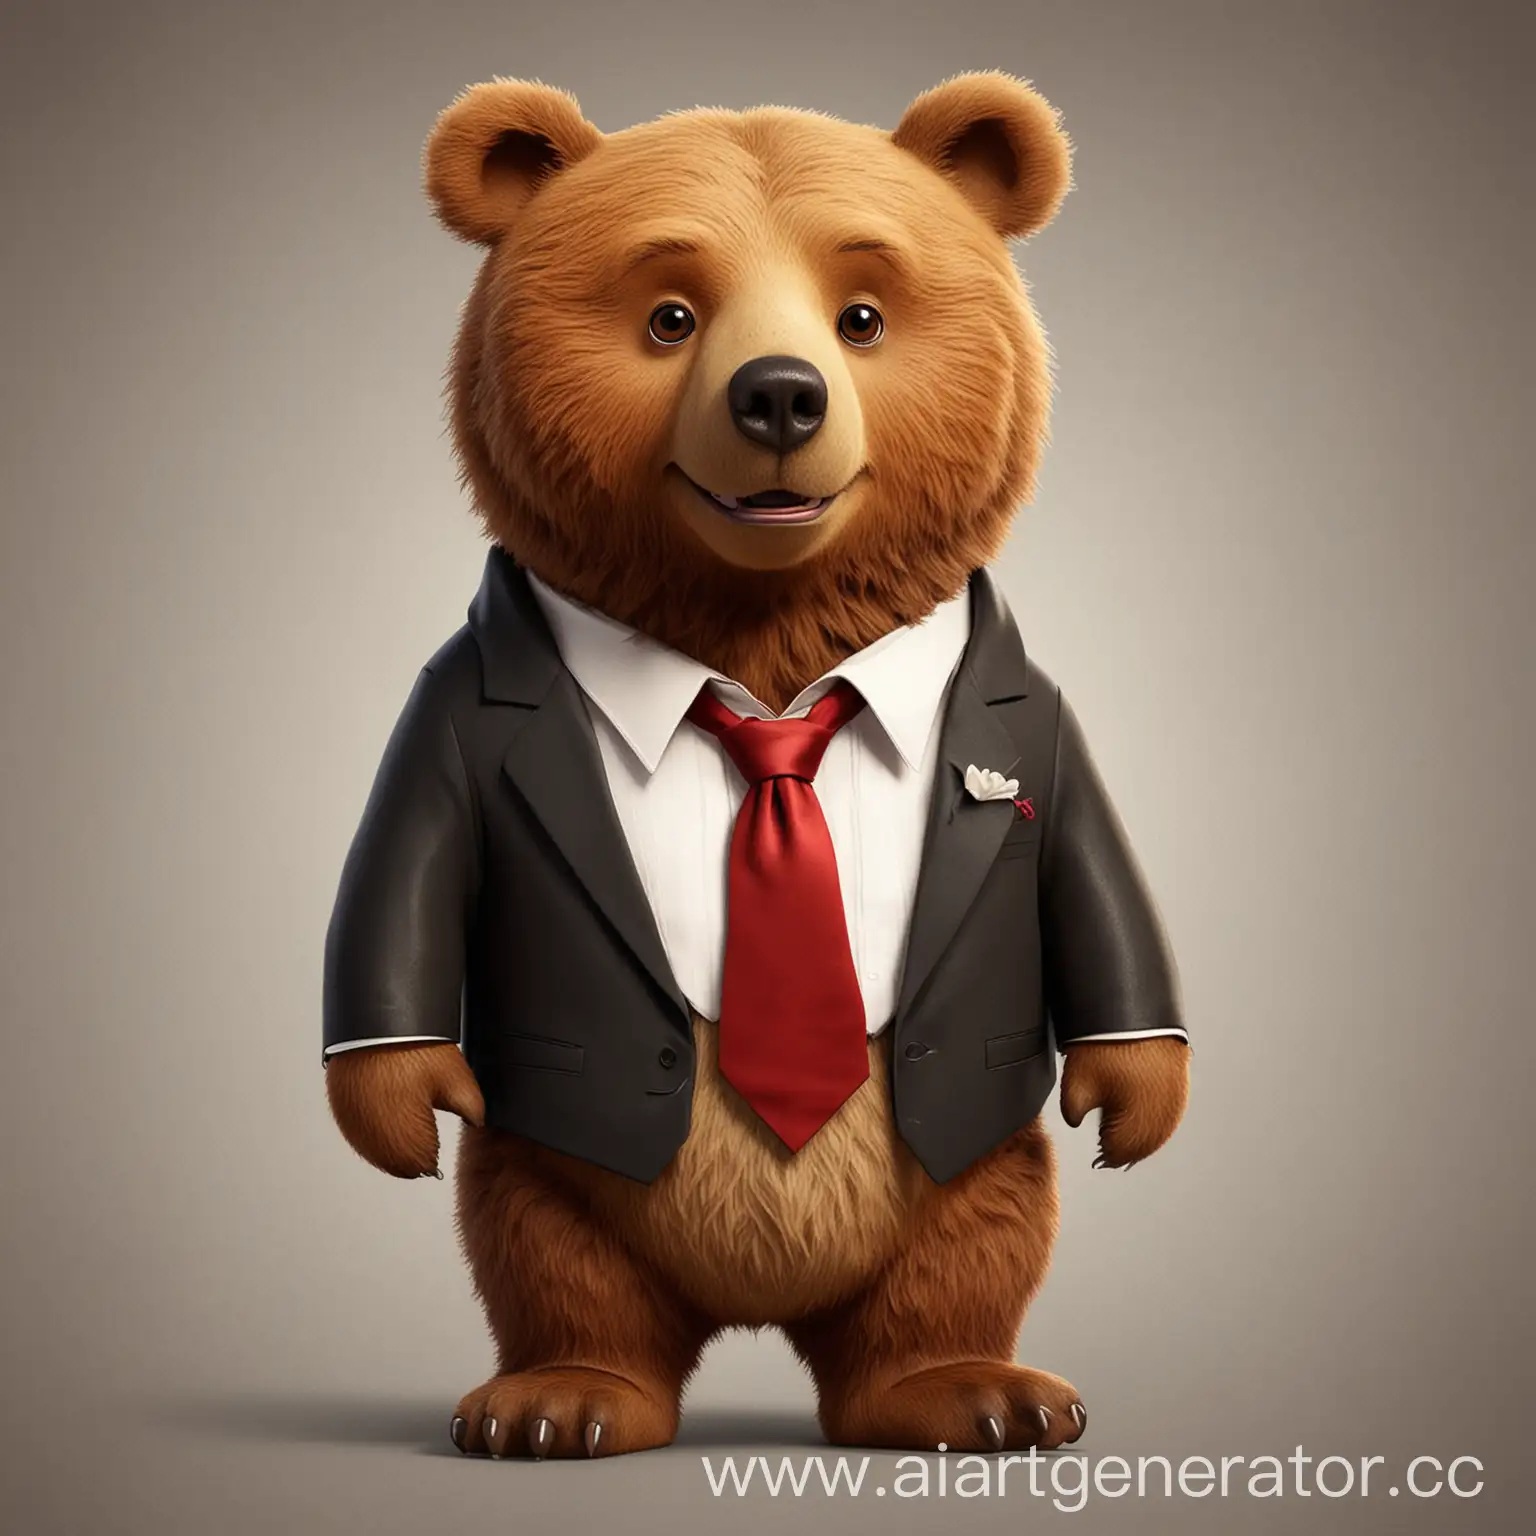 мультяшный бурый медведь в смокинге с галстуком